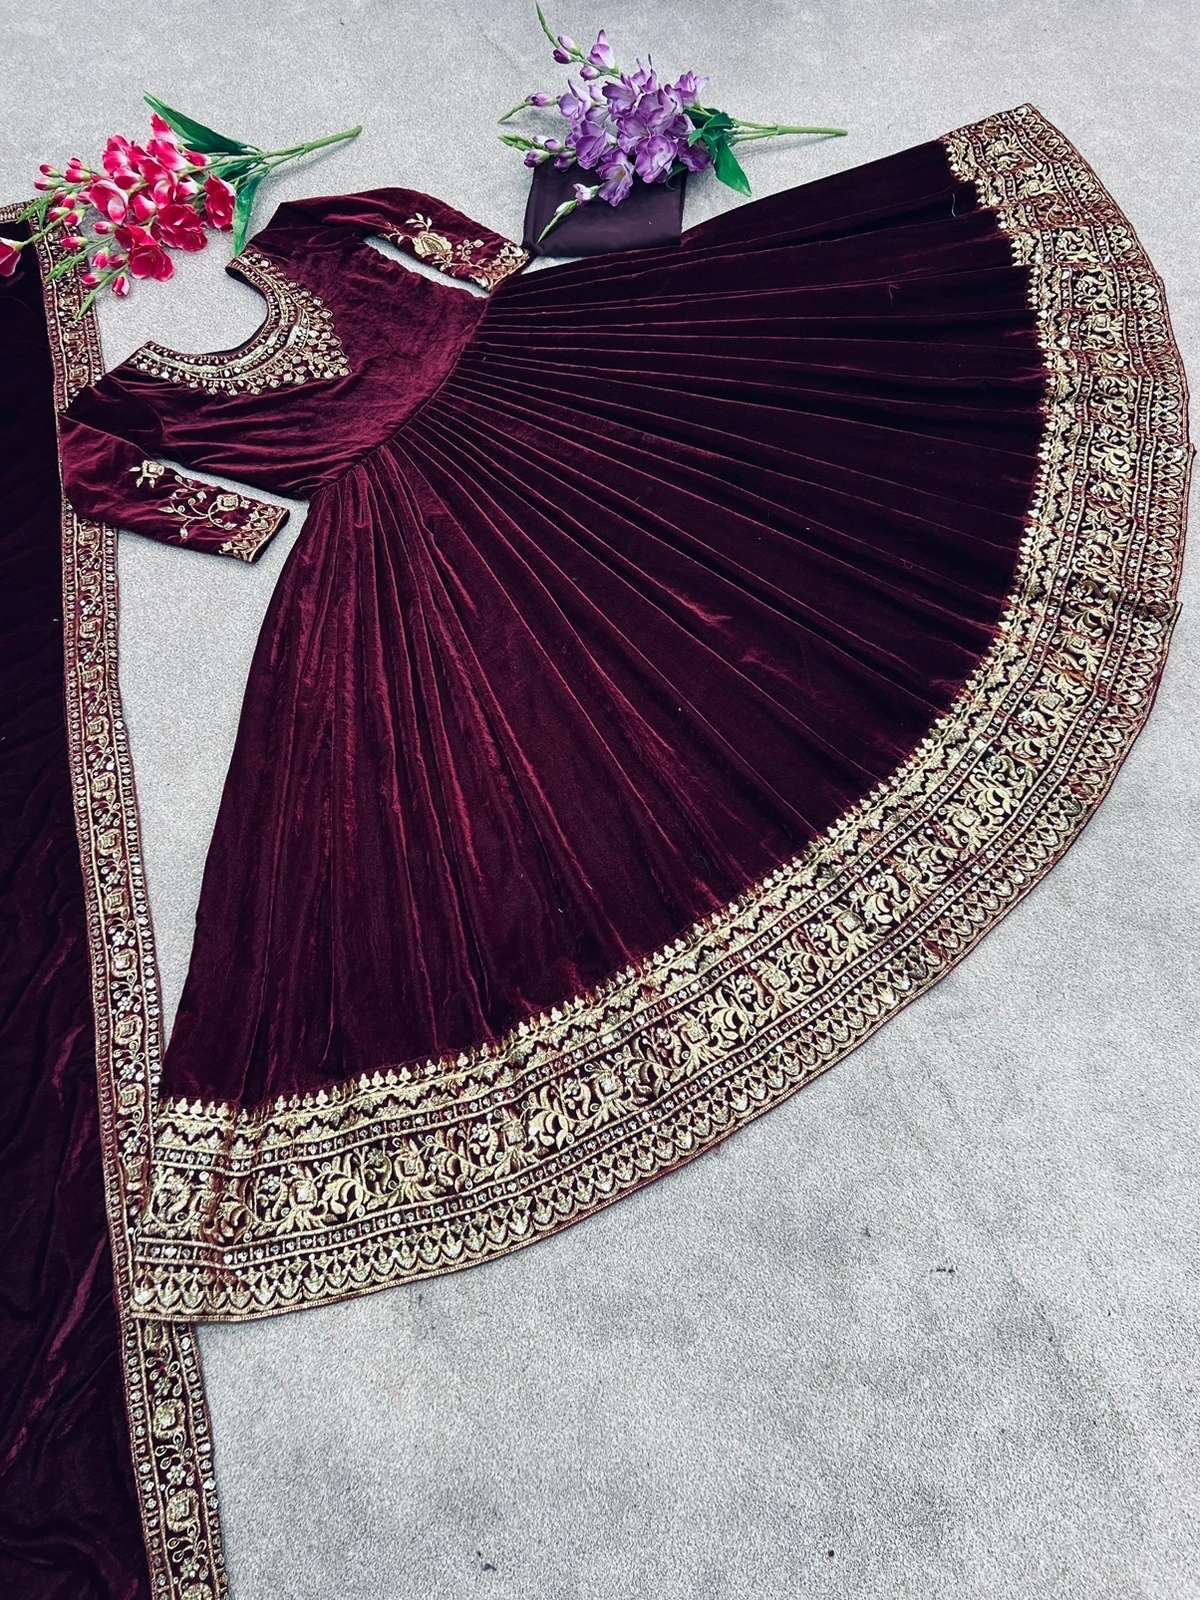 Velvet dress | Velvet dress designs, Velvet dresses outfit, Beautiful  pakistani dresses